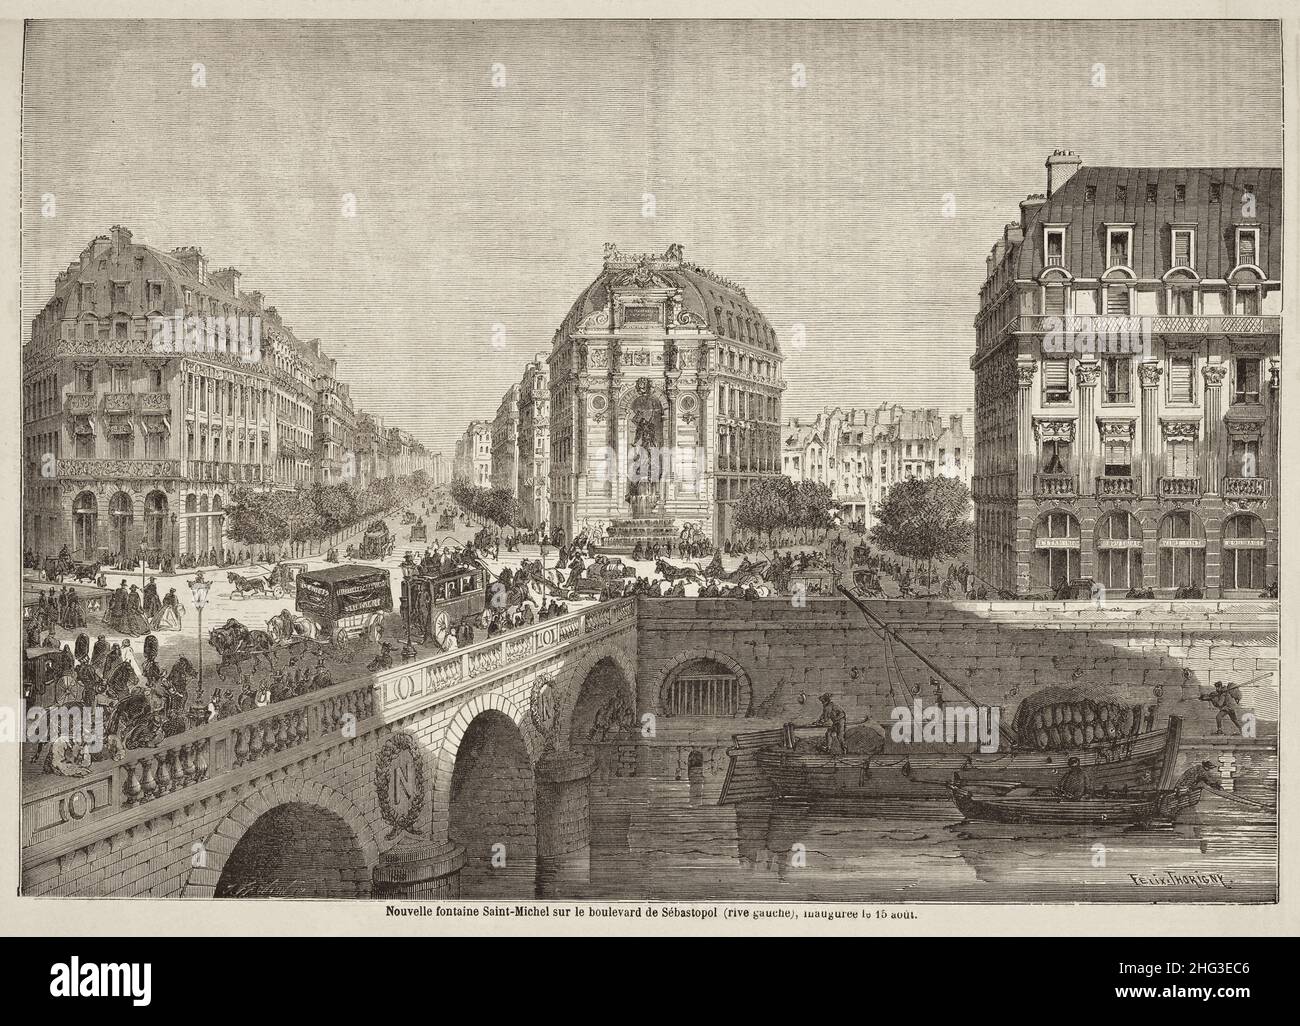 Gravure de la nouvelle fontaine Saint-Michel sur le boulevard Sébastopol (rive gauche), inaugurée le 15 août.1860. Paris, France Banque D'Images